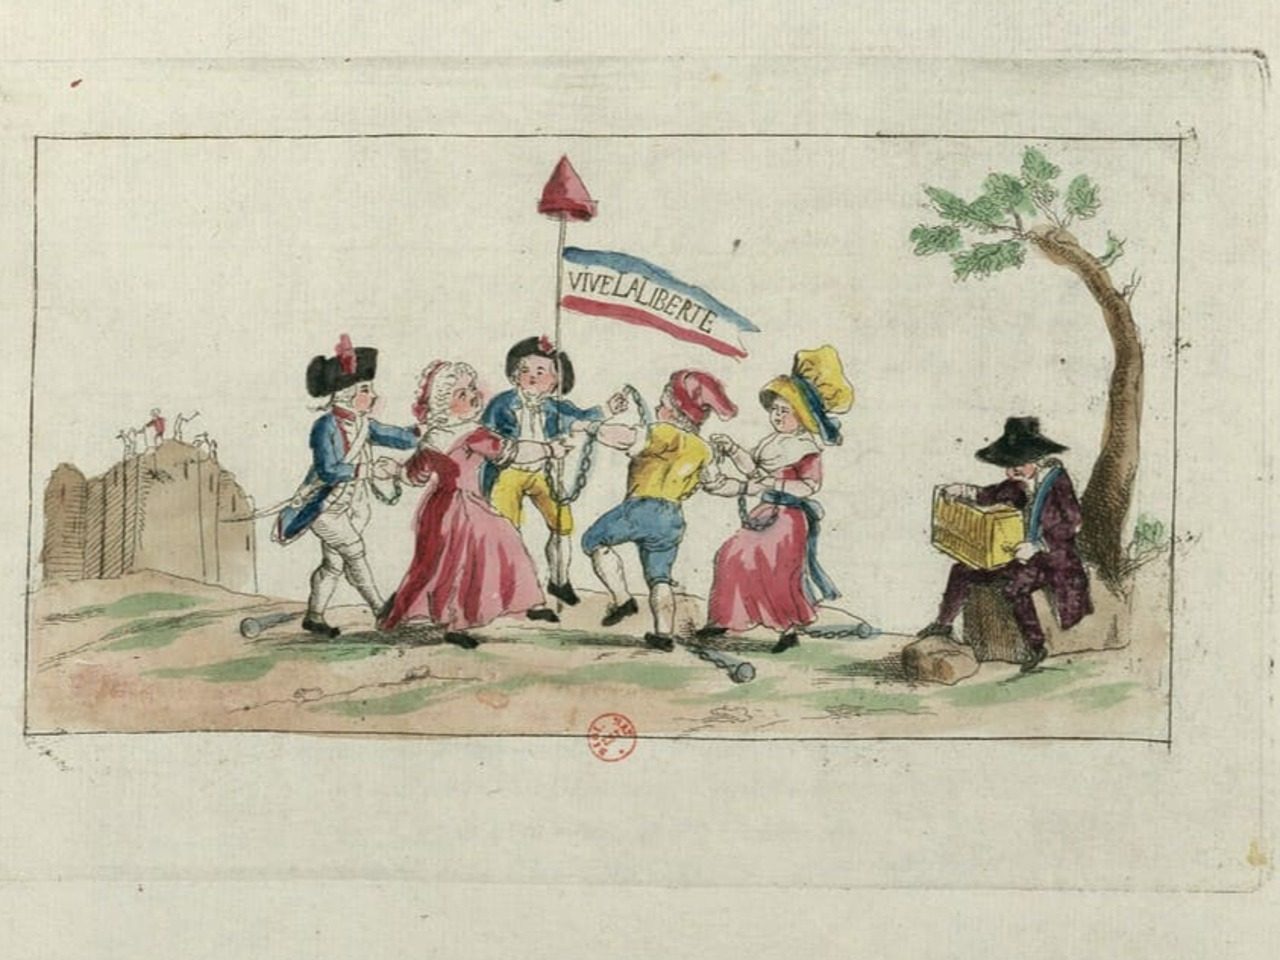 Estampe "Vive la liberté !" de 1789, collections de Gallica, BnF, représentant un groupe de personnes dansant avec deux gardes